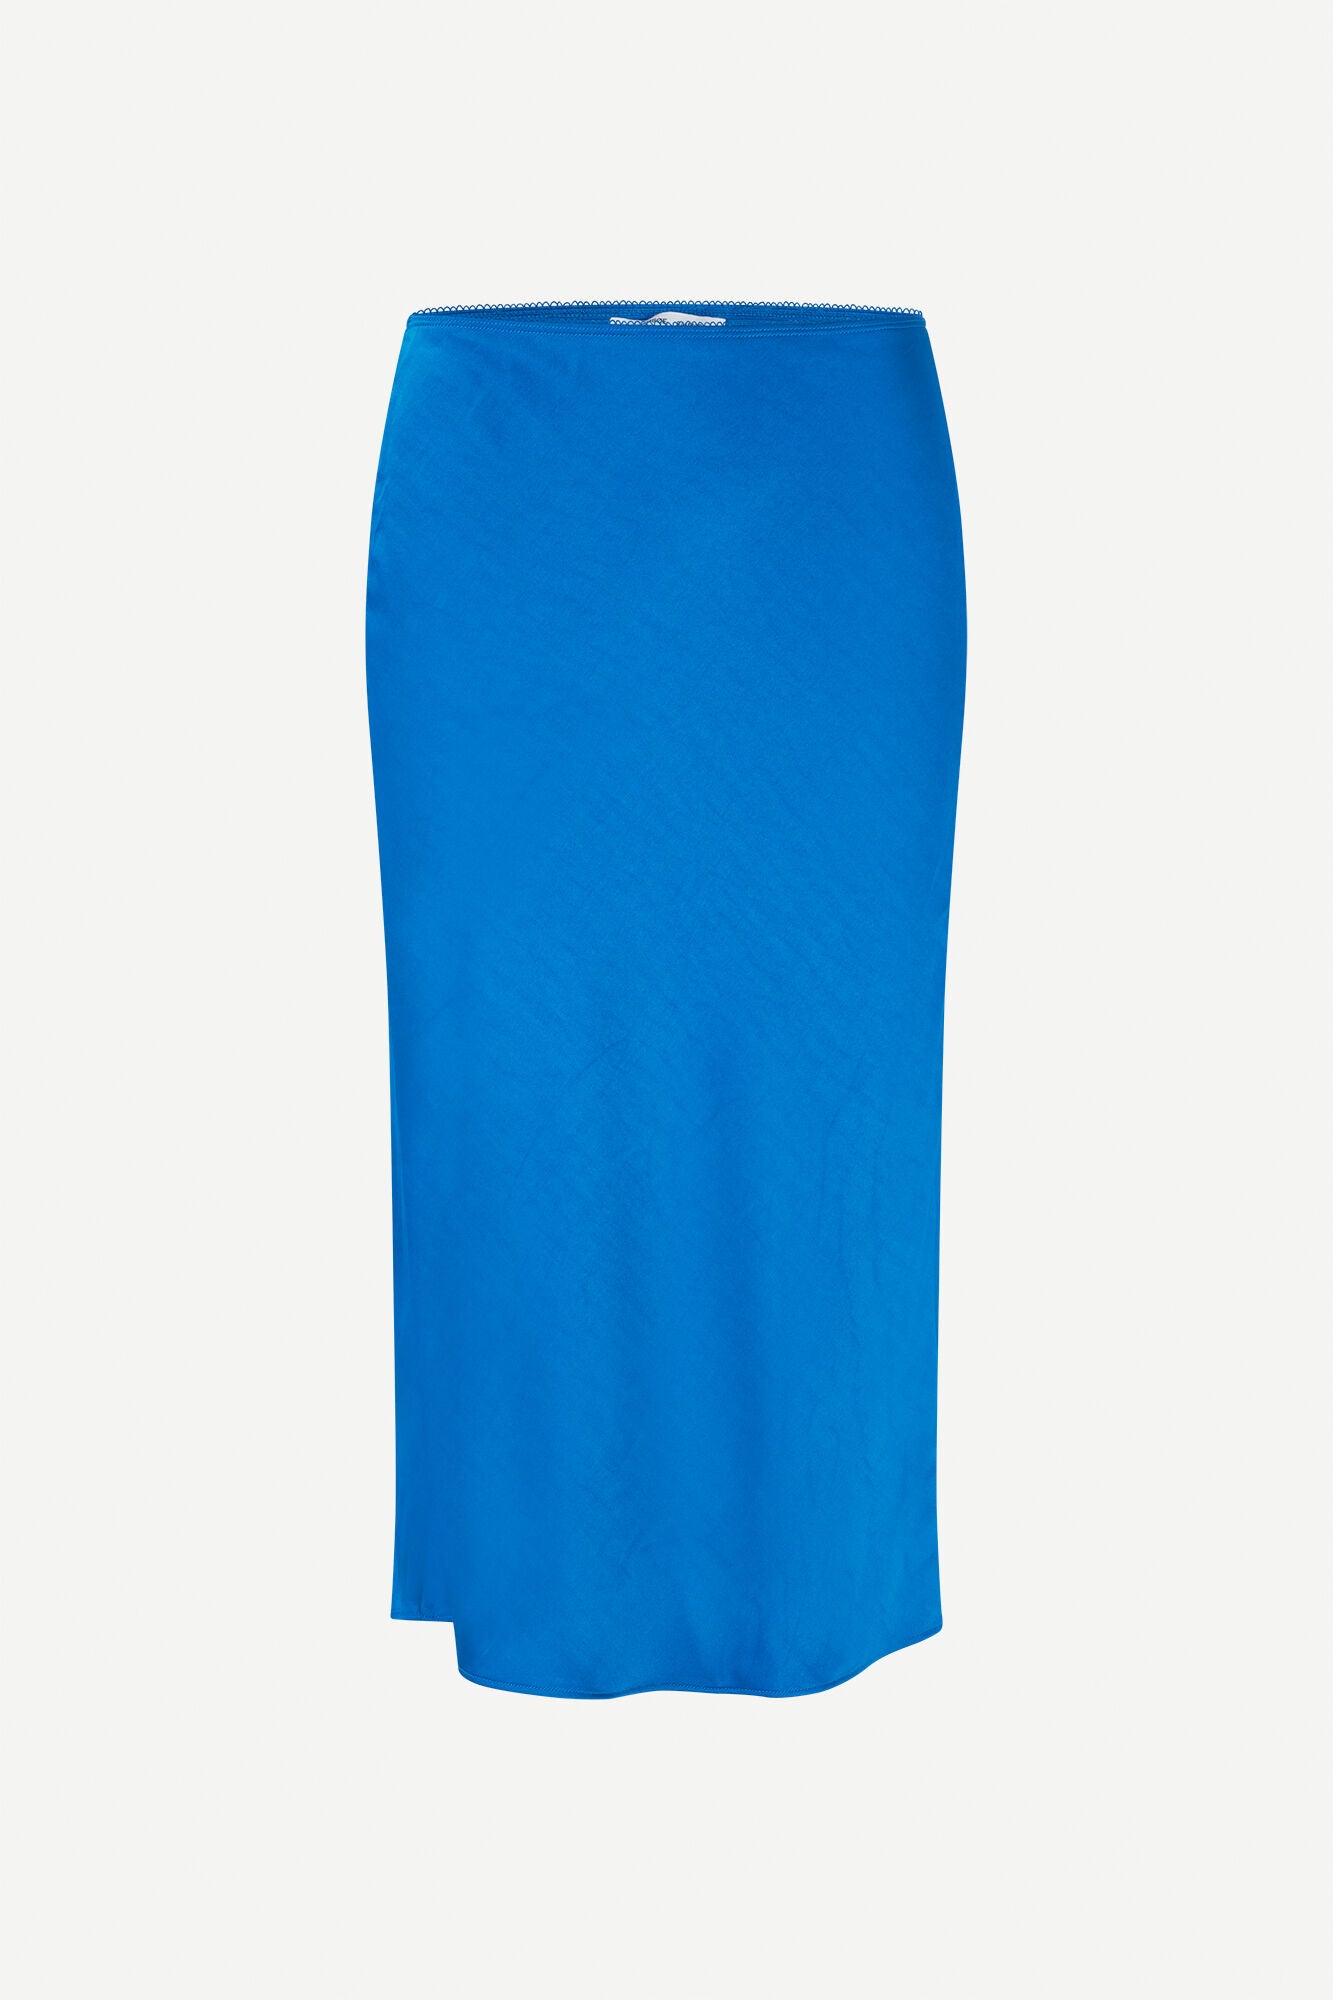 Agneta skirt in bright blue